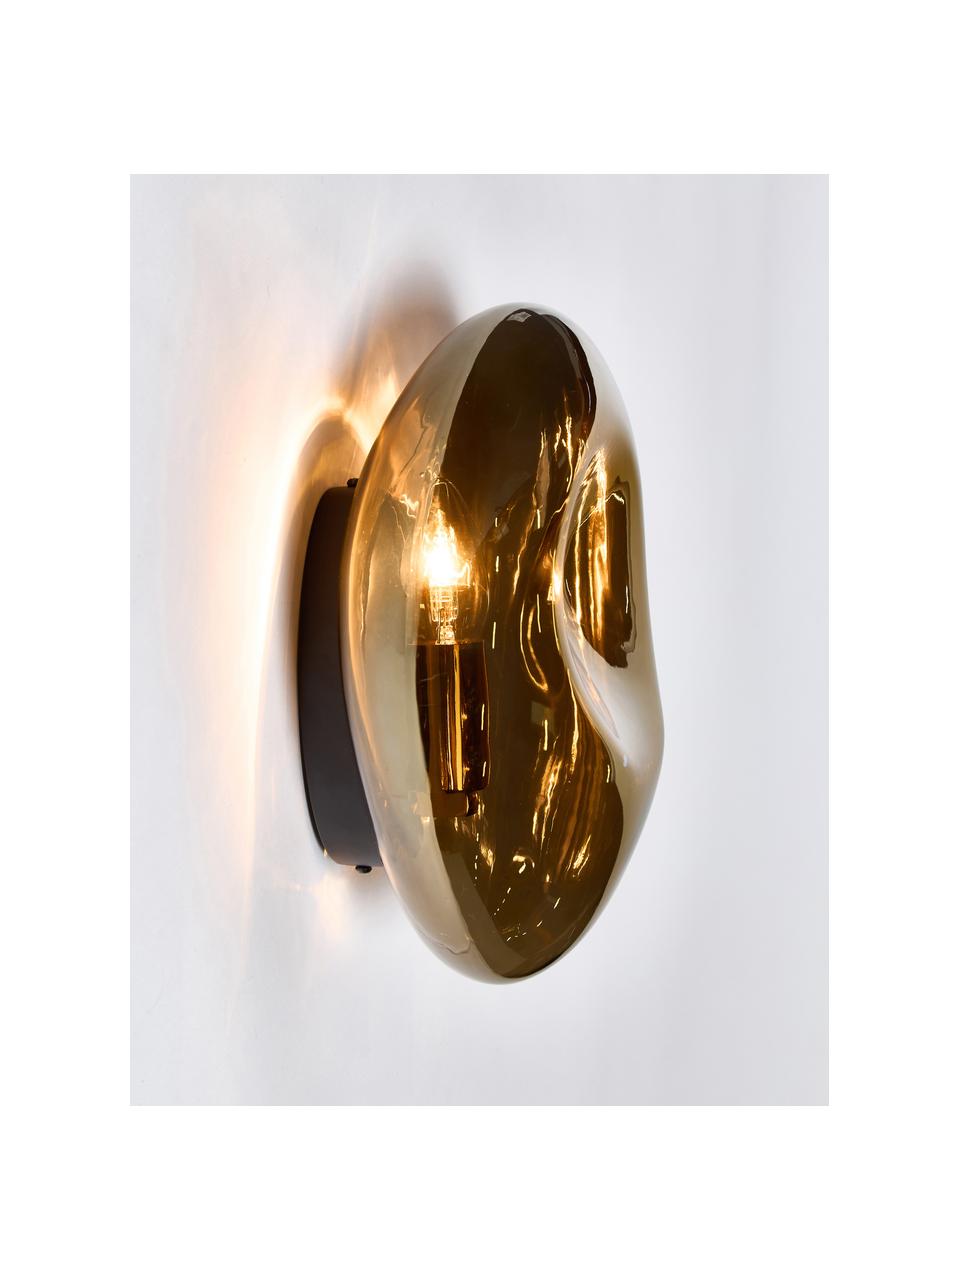 Mondgeblazen wandlamp Mabell, Lamp: mondgeblazen glas, Goudkleurig, B 28 x D 13 cm